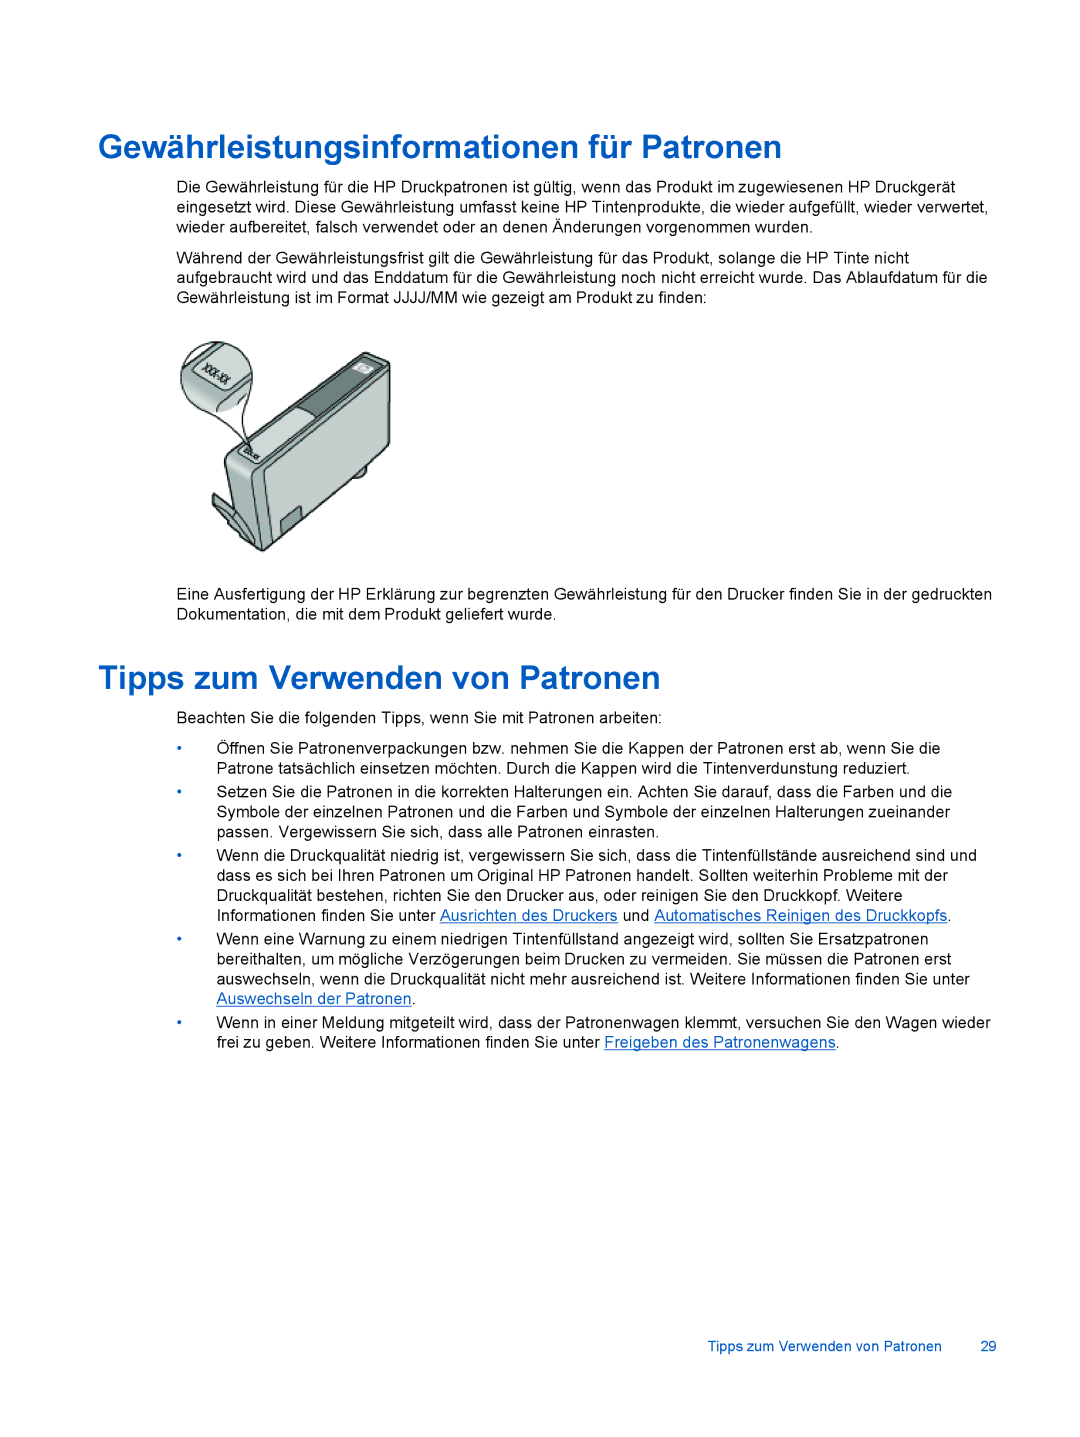 HP 6520 manual Gewährleistungsinformationen für Patronen, Tipps zum Verwenden von Patronen 